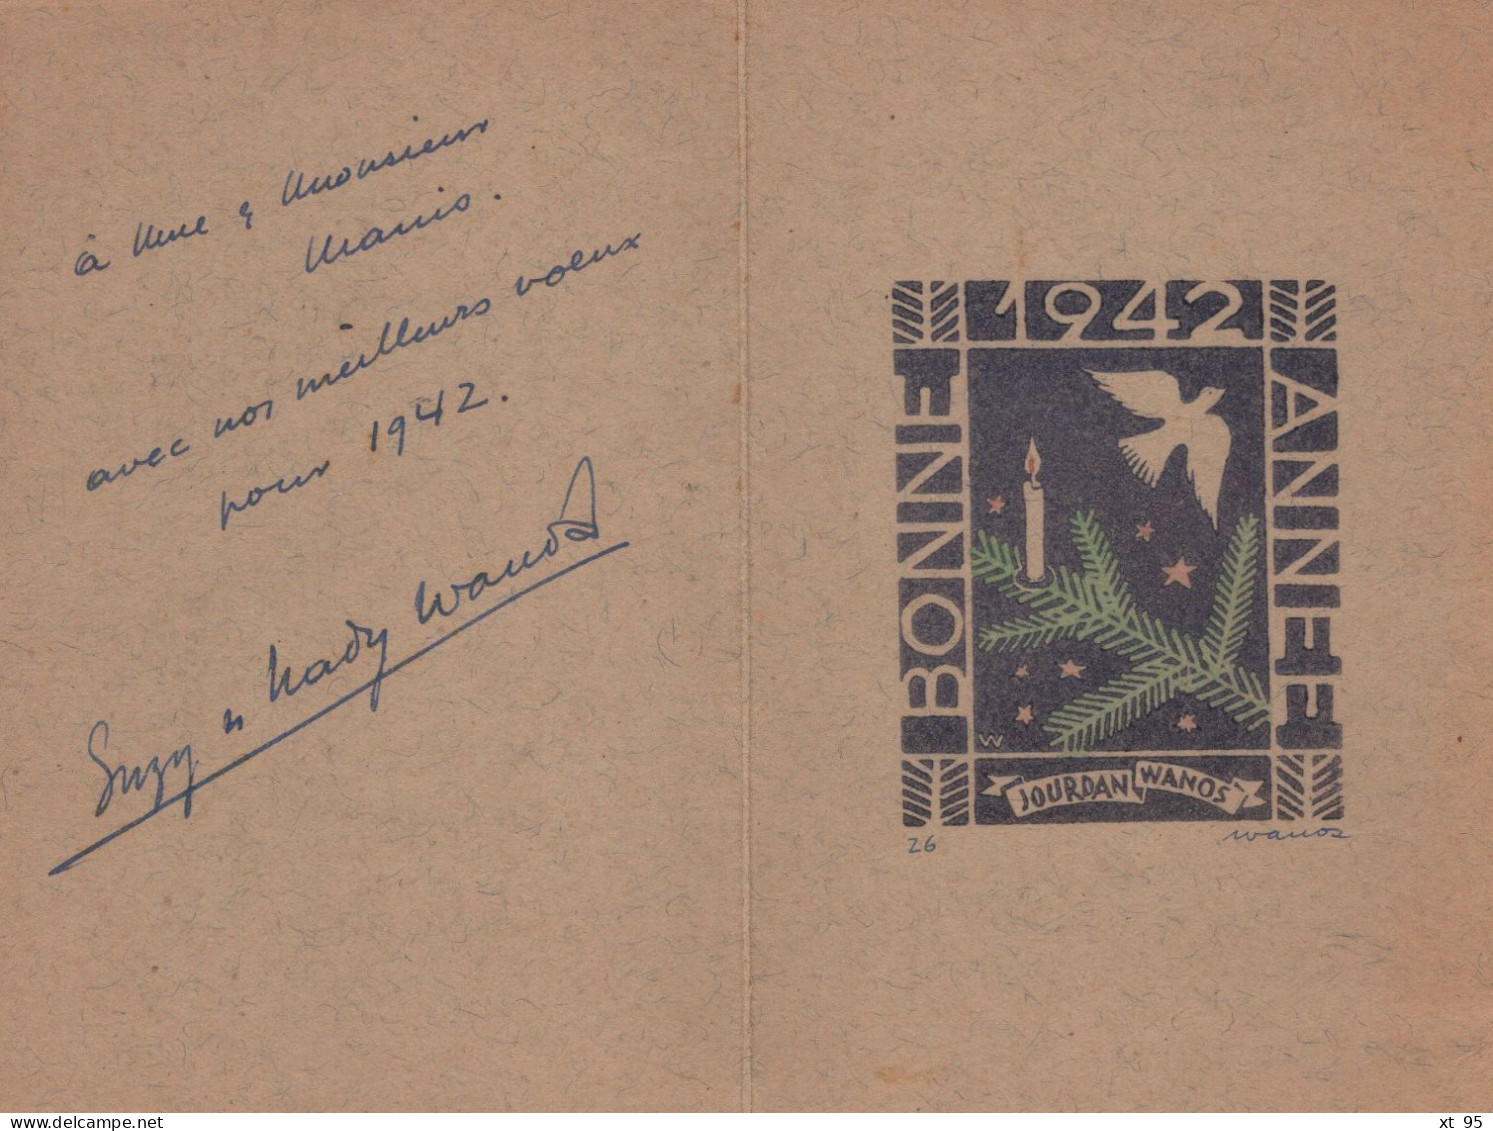 Lot De 5 Cartes De Bonne Annee Avec Lithographies - Signees Leonard Wanos (philateliste Journaliste) 1941 à 1949 - Lithografieën